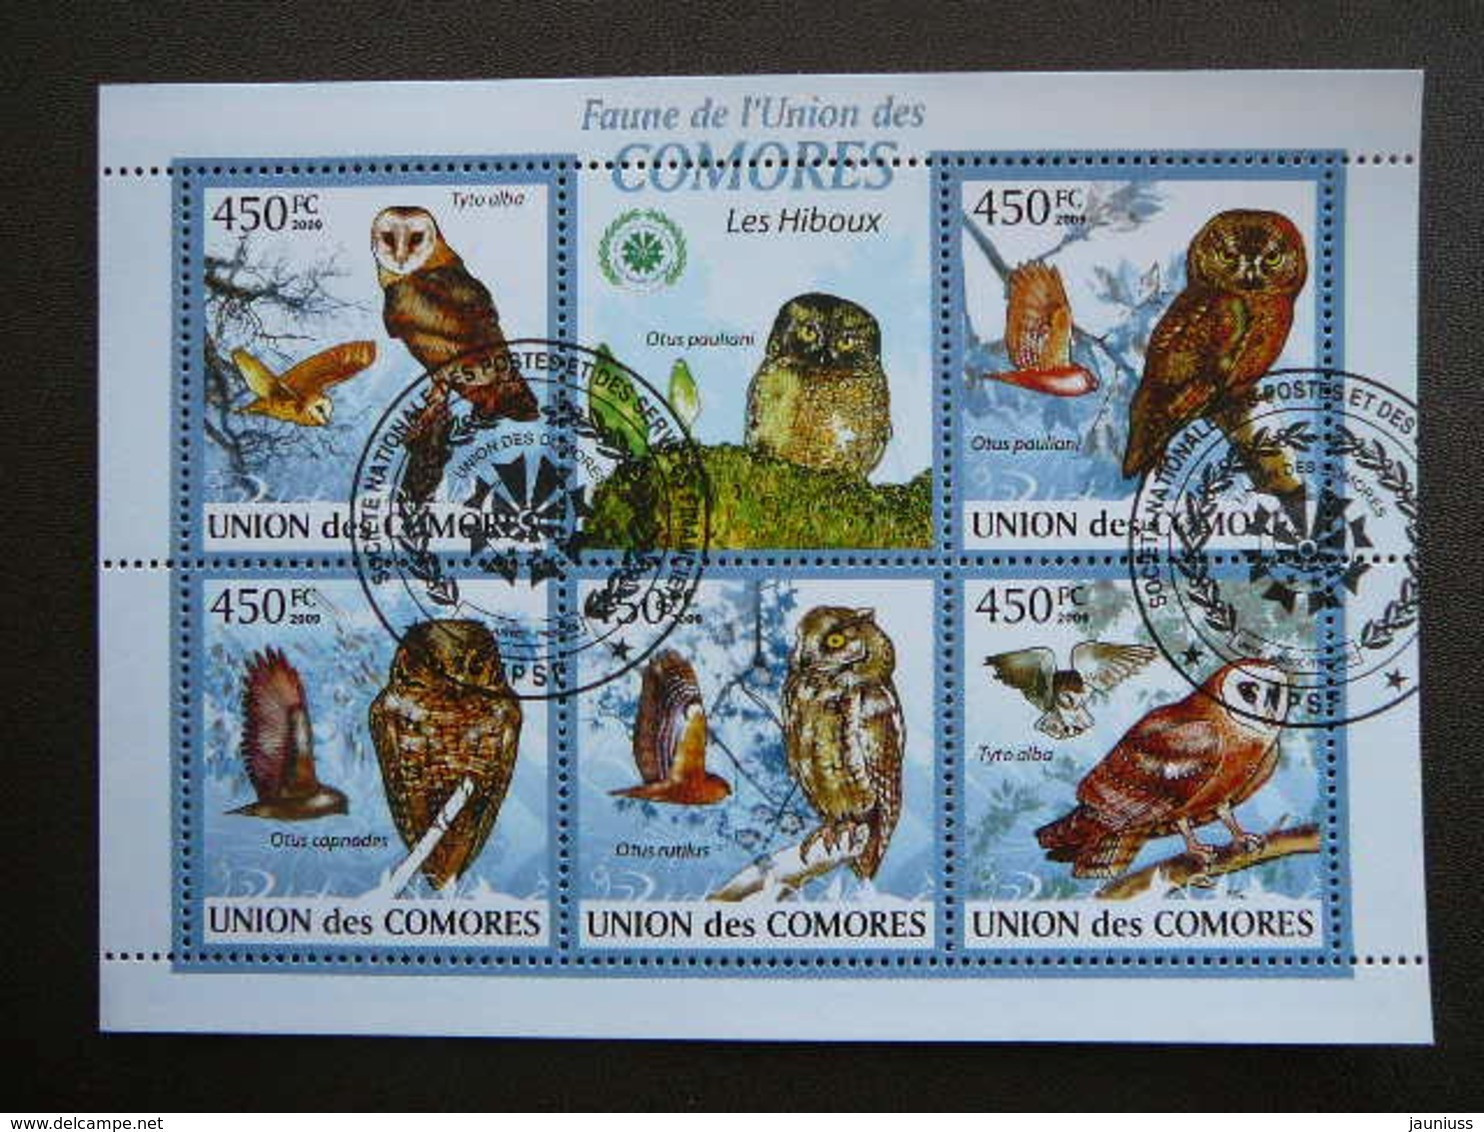 Owls. Eulen. Les Hiboux # Comoros 2009 Used S/s #551 Comores Birds - Gufi E Civette